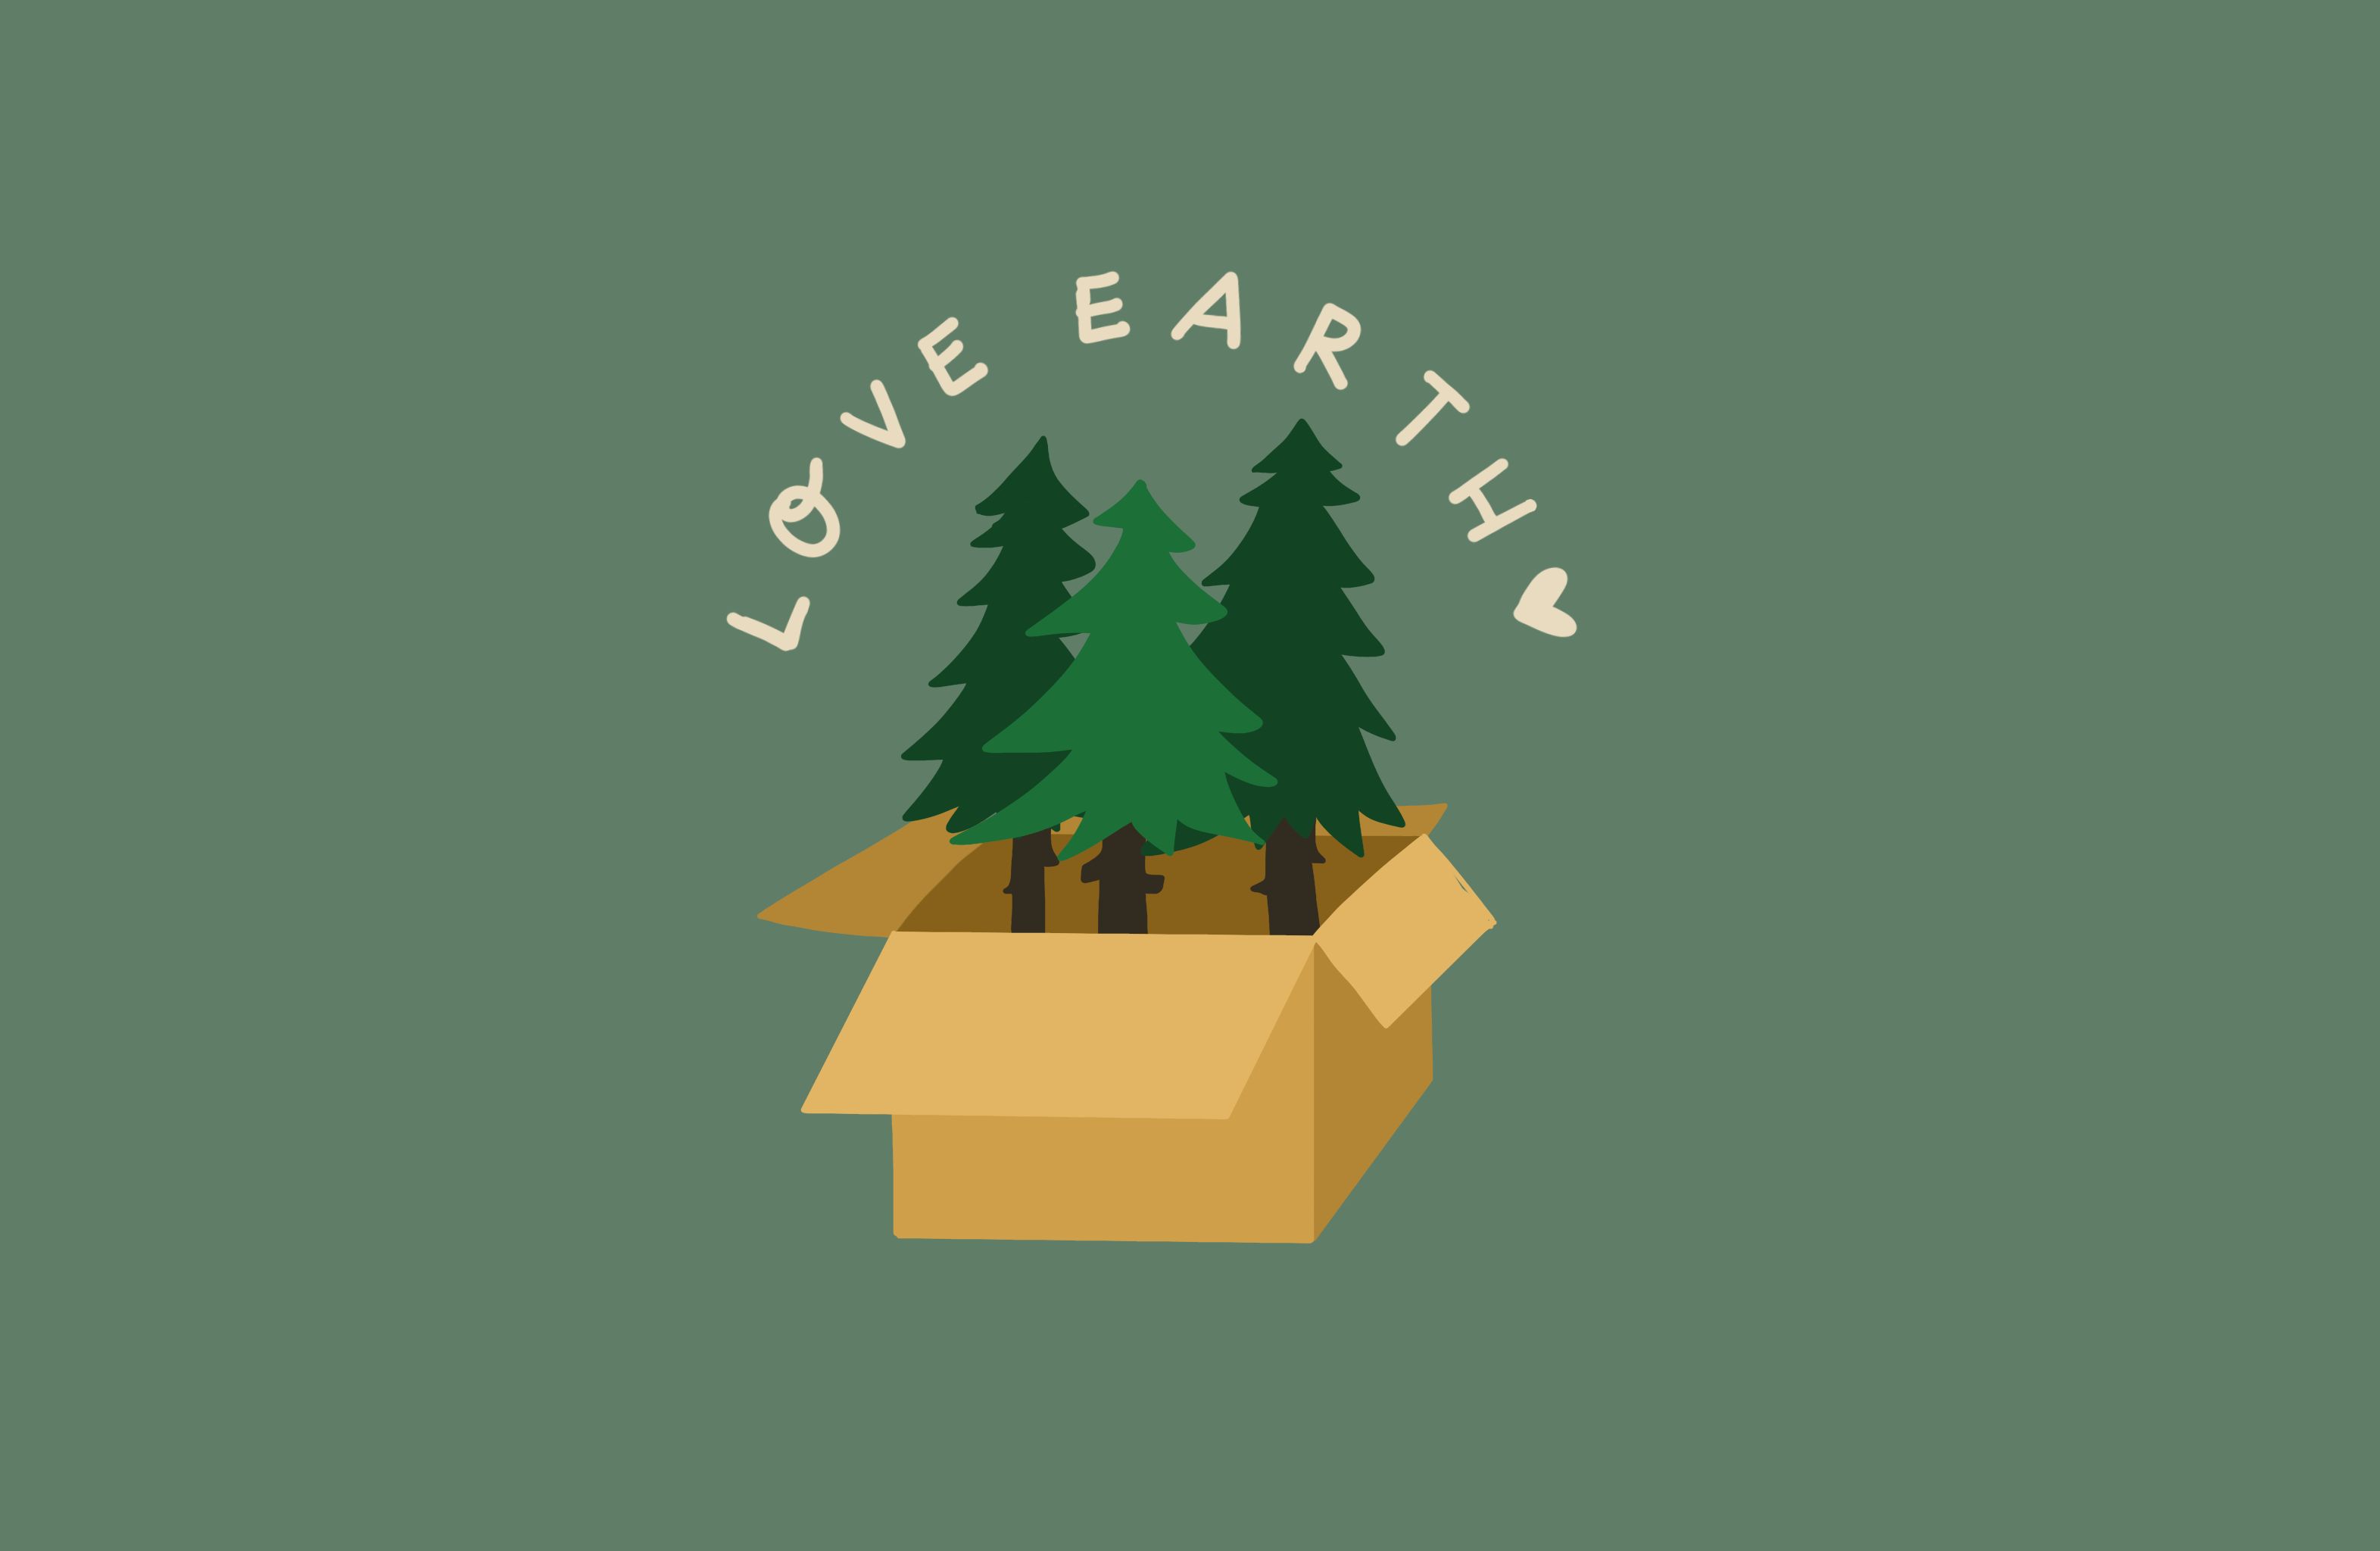 Love Earth, unser nachhaltiger Versand, hier wachsen die Bäume aus dem Karton, recycling